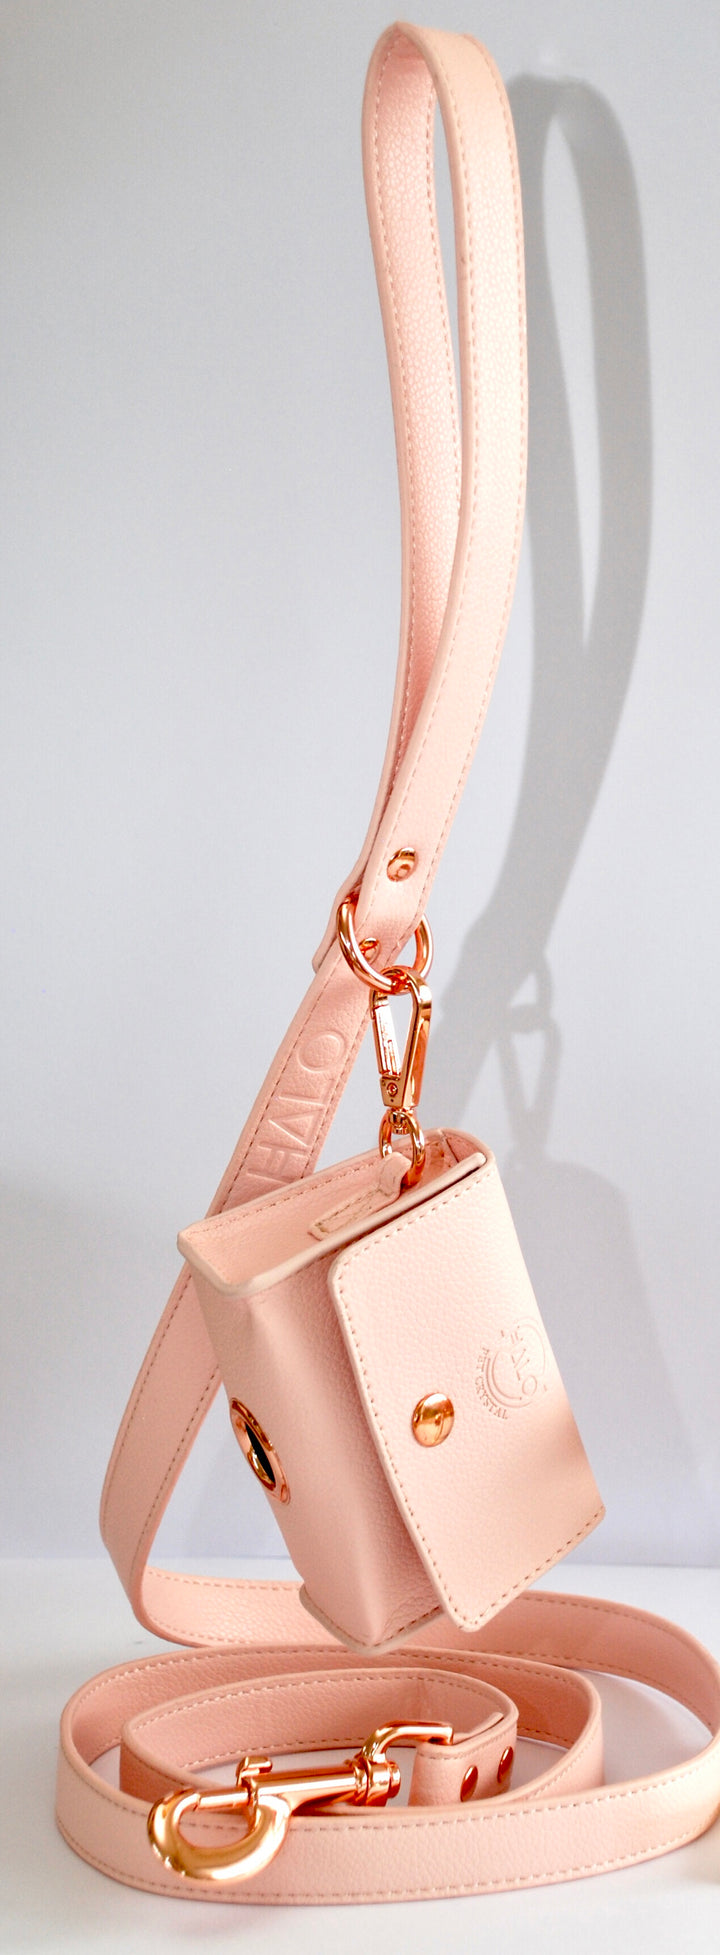 Leash and Poop Bag Holder Pink dog Leash, pink dog accessories, designer dog leash pink, dog lead